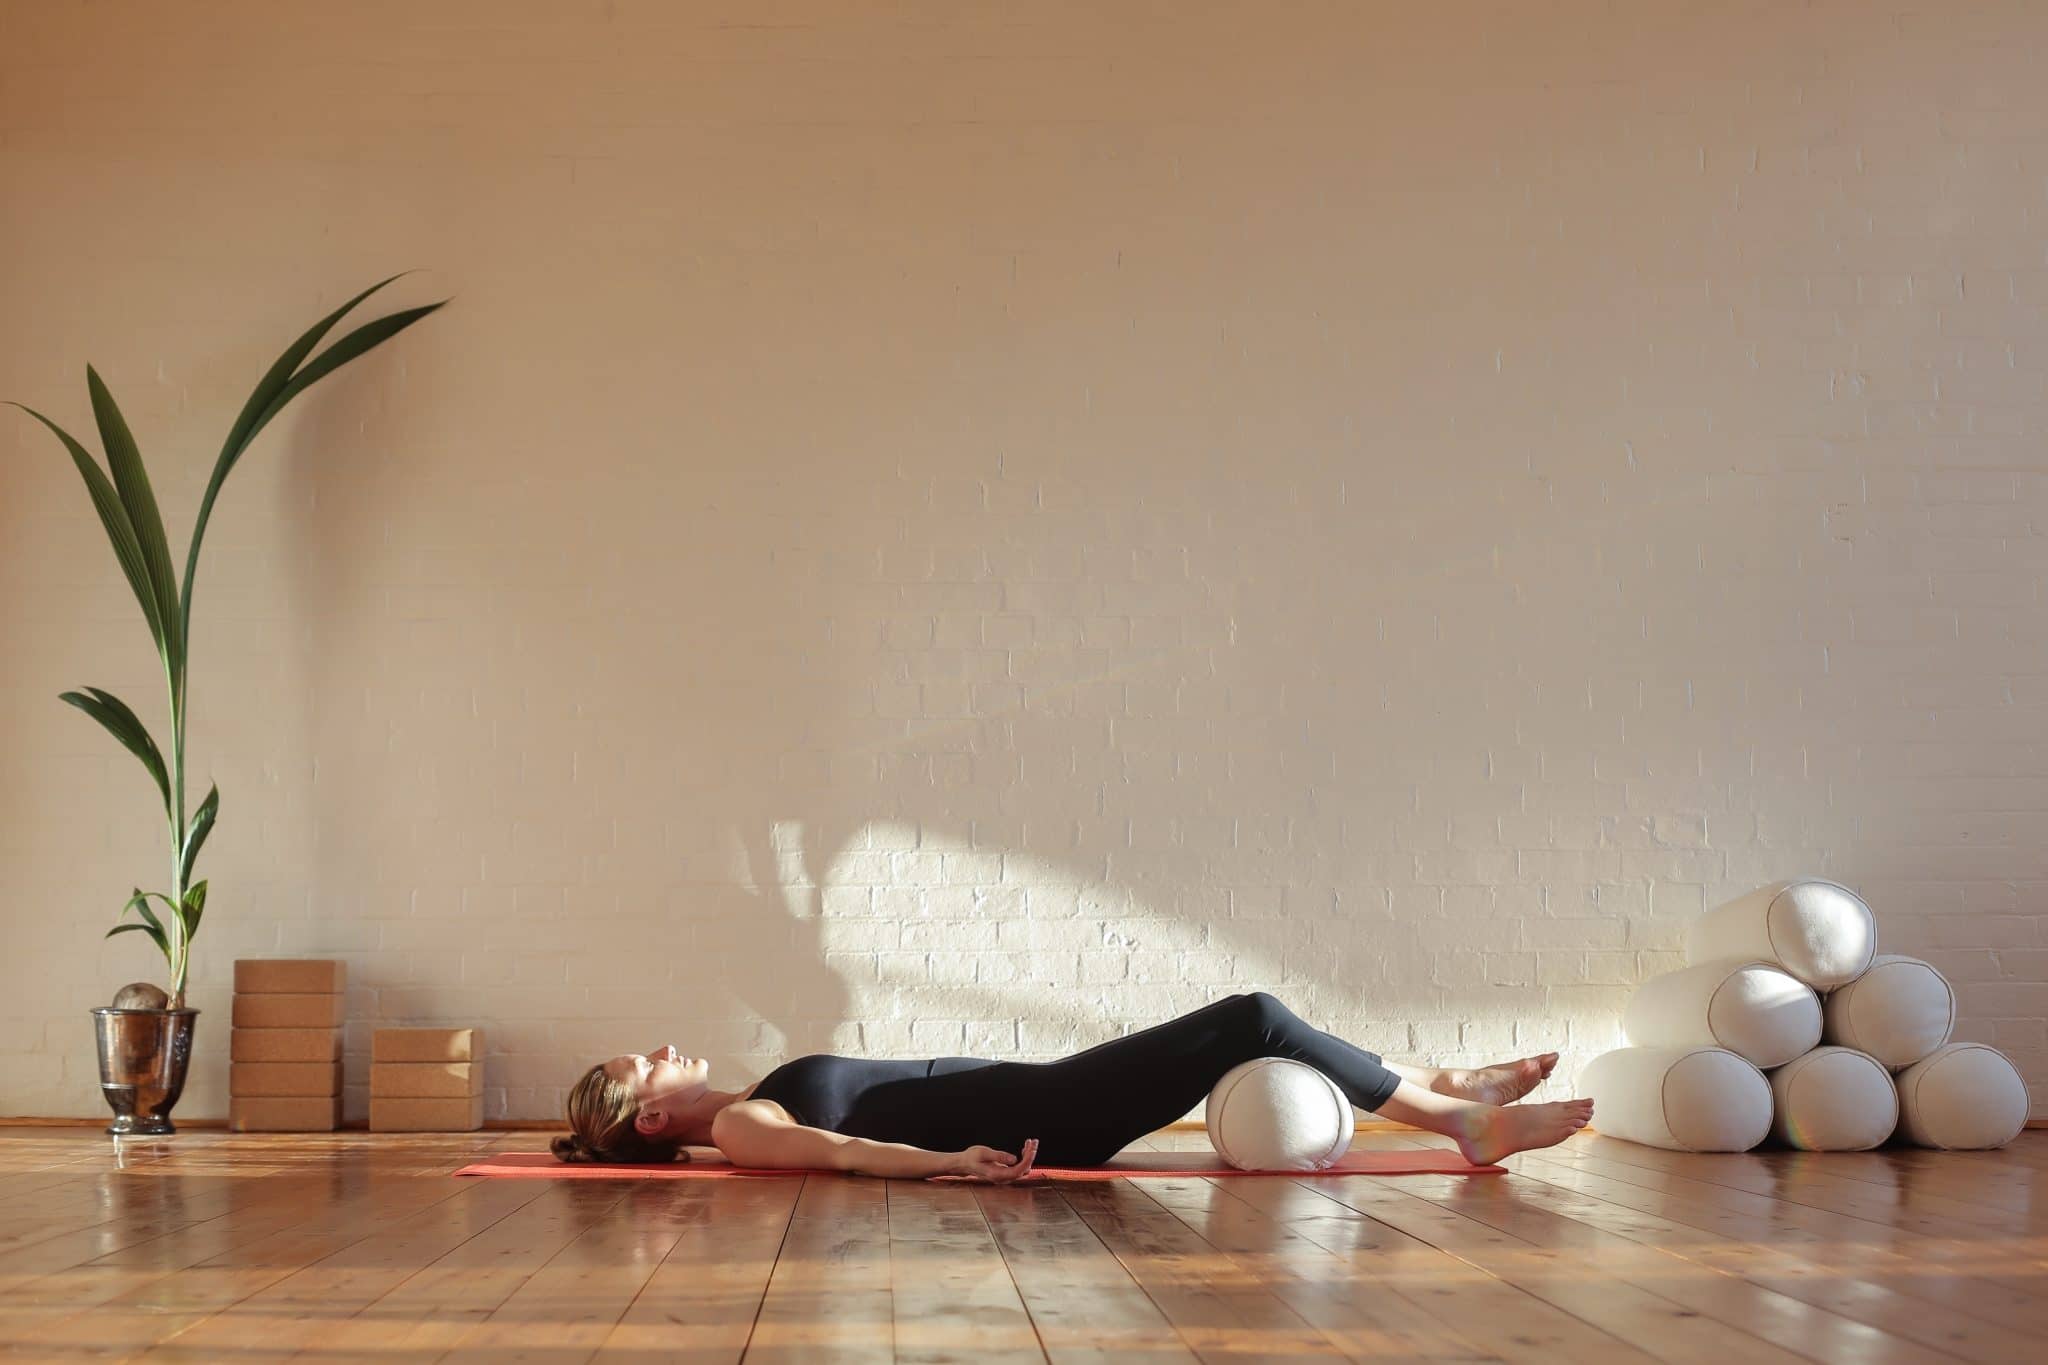 Une personne est allongée sur un tapis de yoga dans une pièce ensoleillée, avec des accessoires de yoga à proximité pour des postures visant à soulager